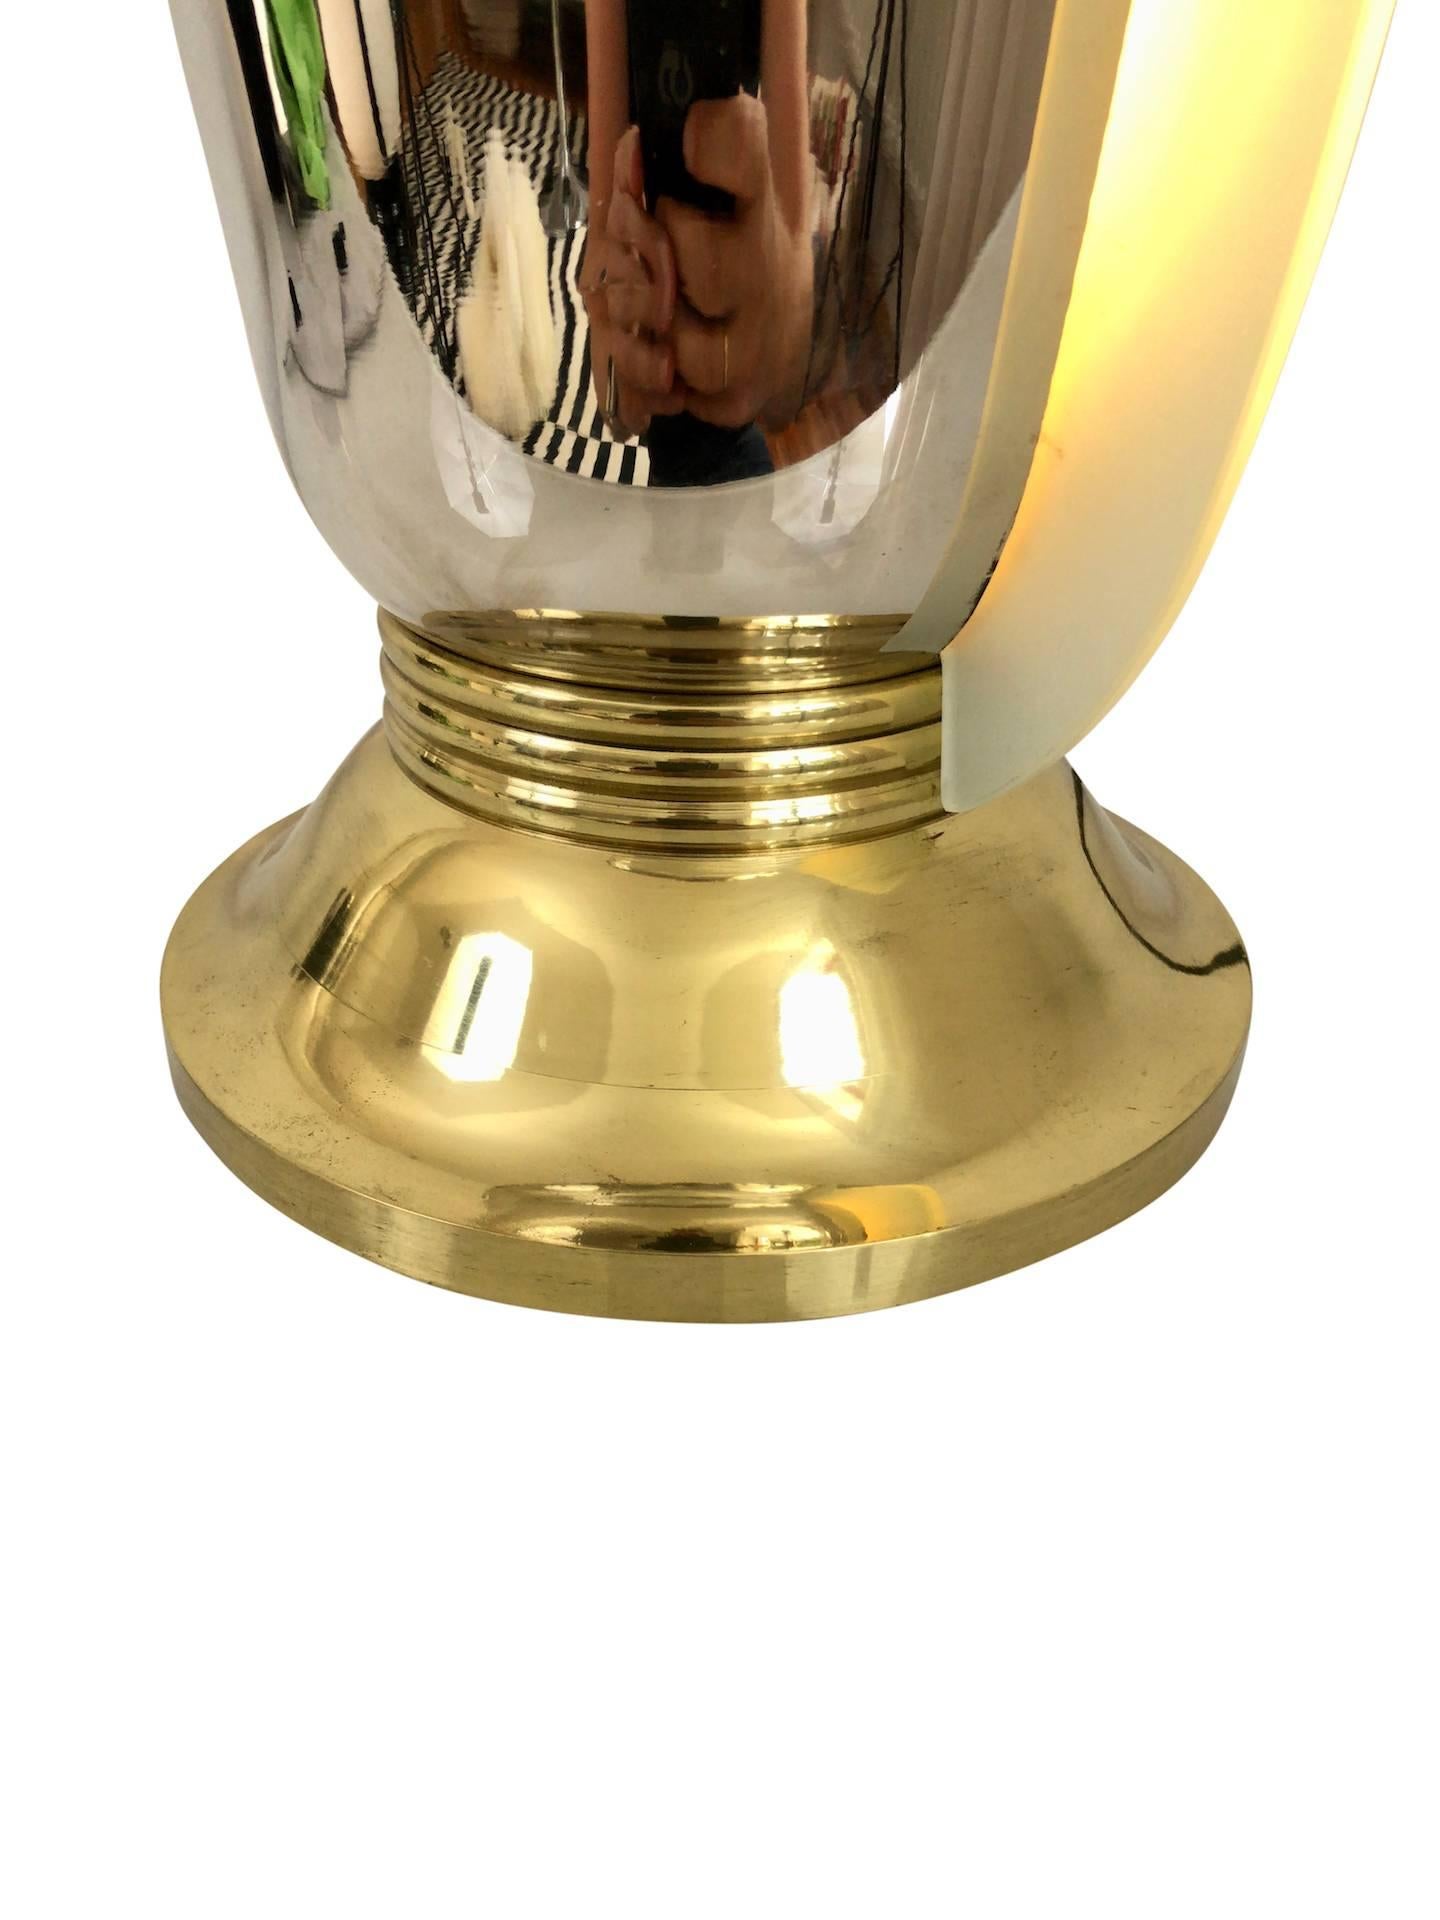 Belle lampe vase avec une forme typique de tulipe
Verre éclairé et sablé sur deux côtés
Chrome d'origine (juste nettoyé)
Support en laiton
Art déco original, France, années 1930. 

Dimensions :
Diamètre de l'abat-jour 30 cm
Diamètre du